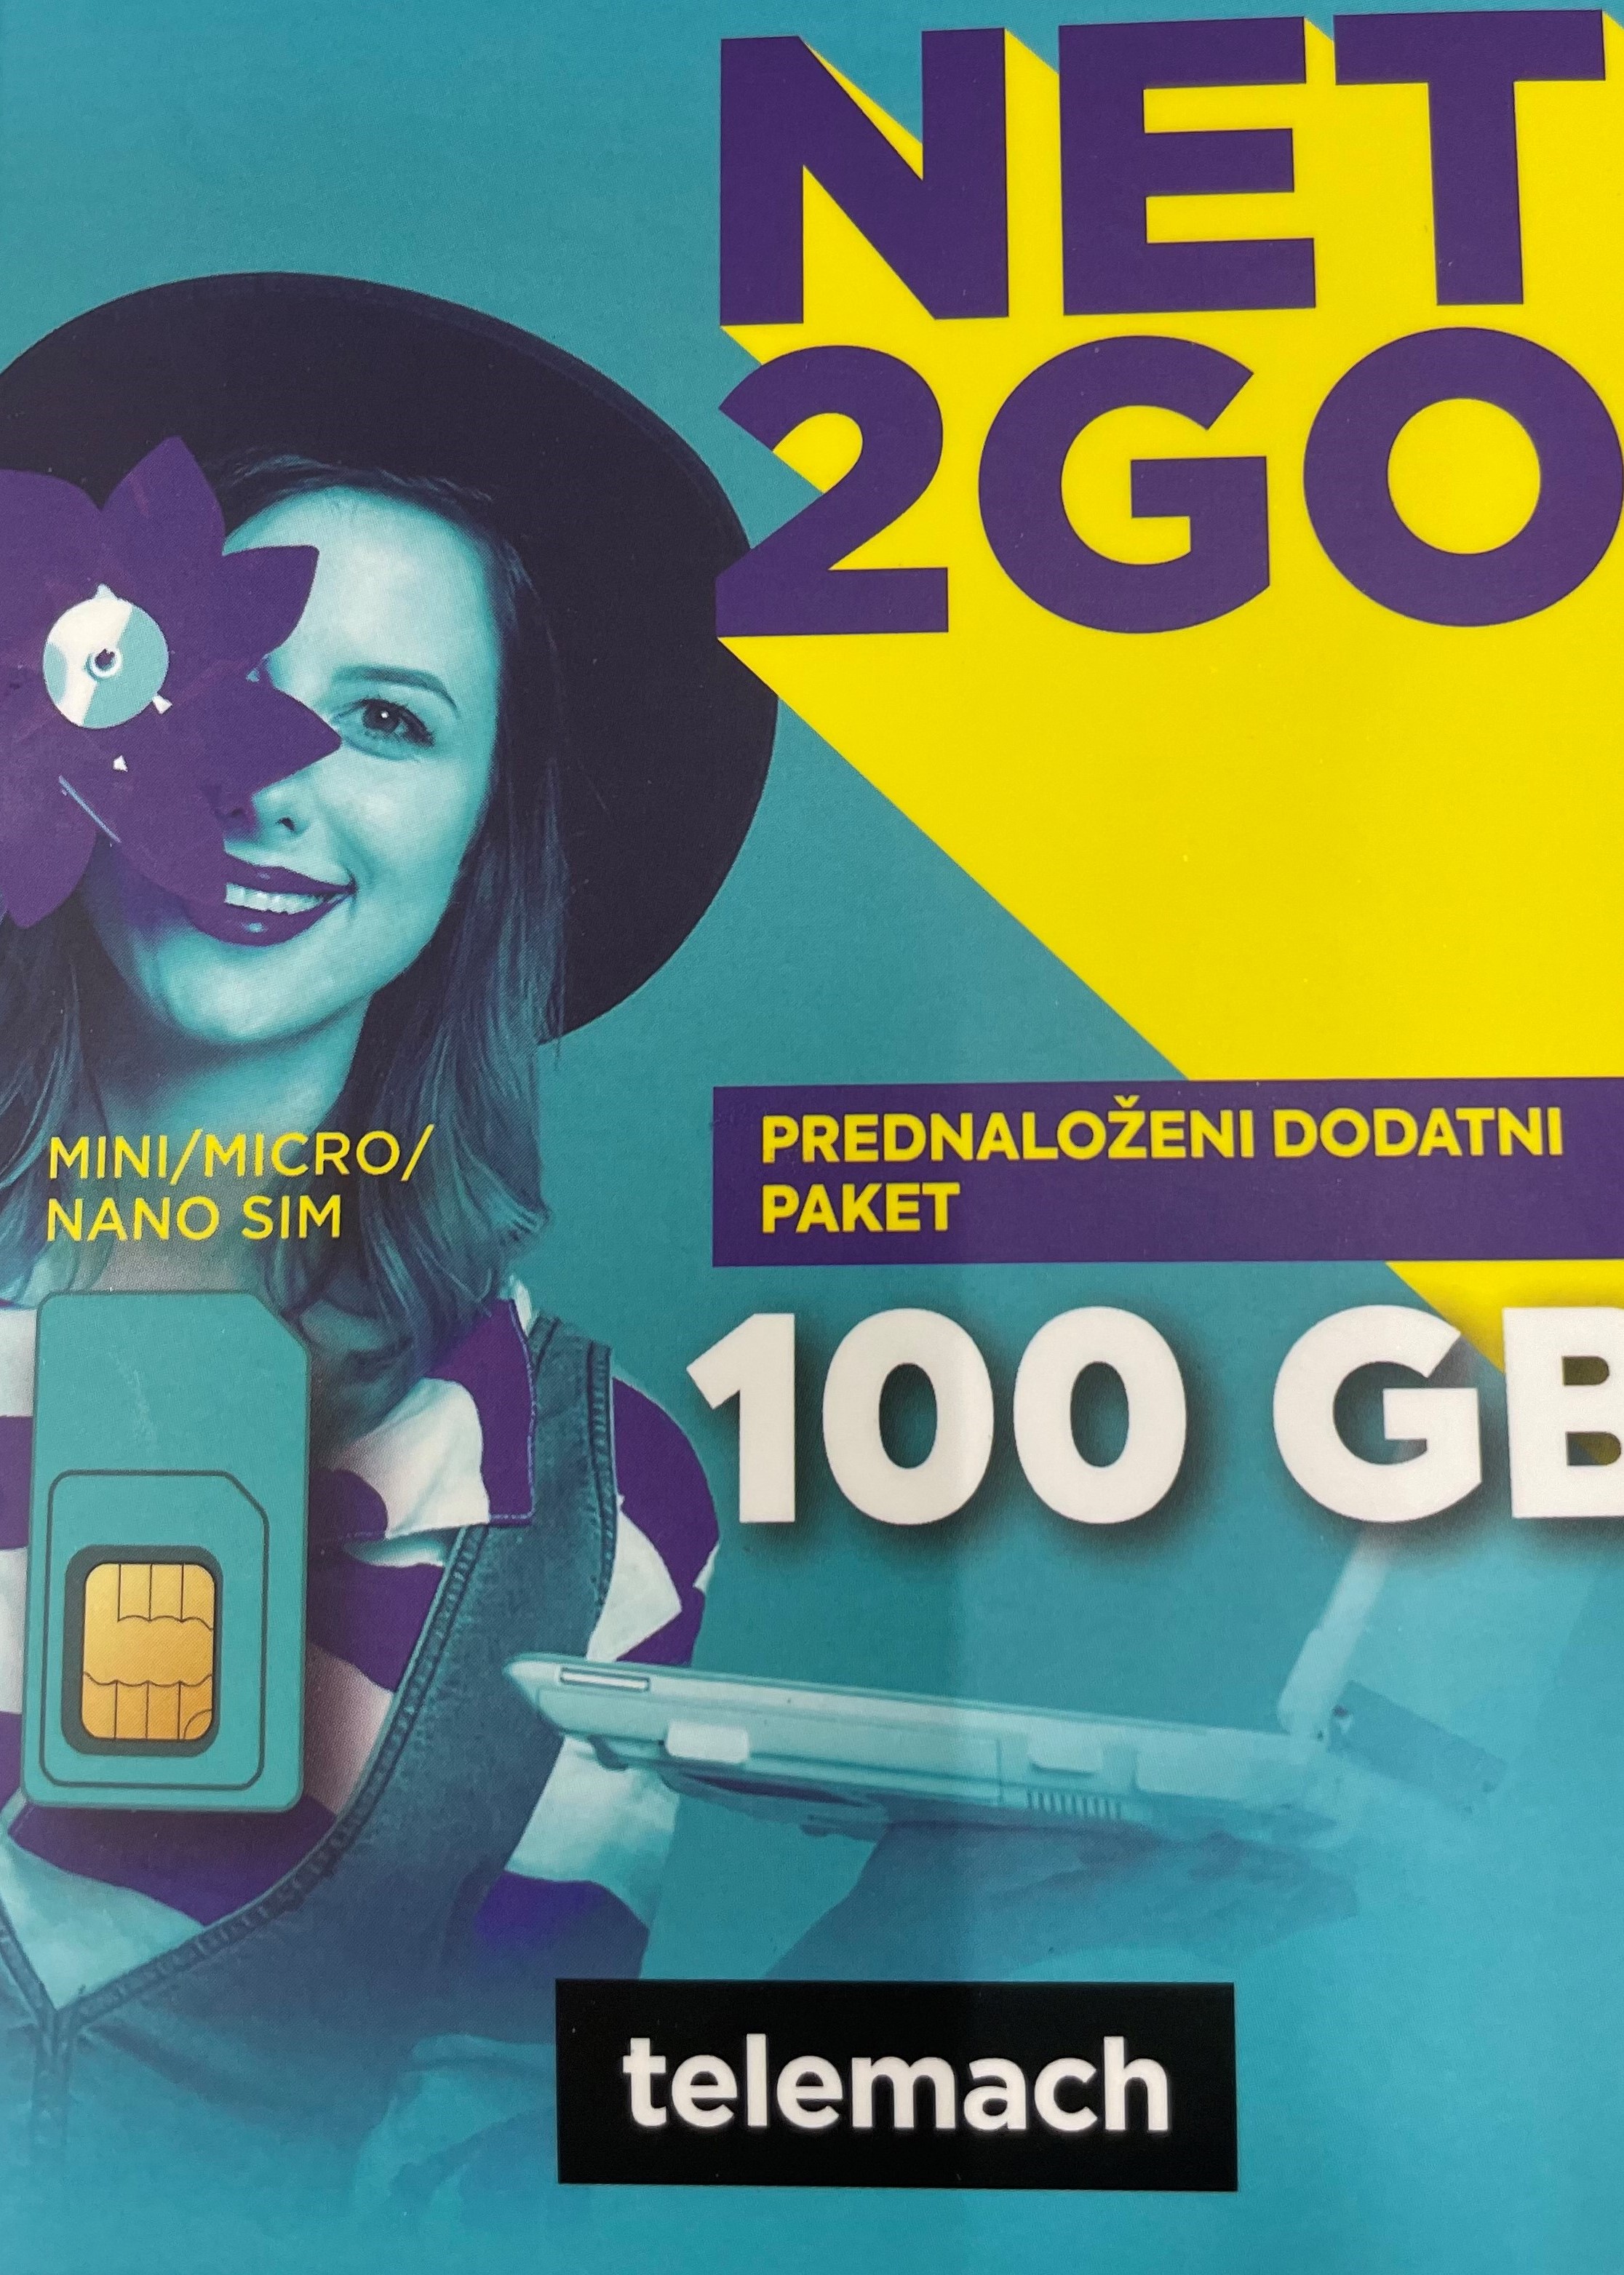 SIM KARTICA NET2GO 100GB